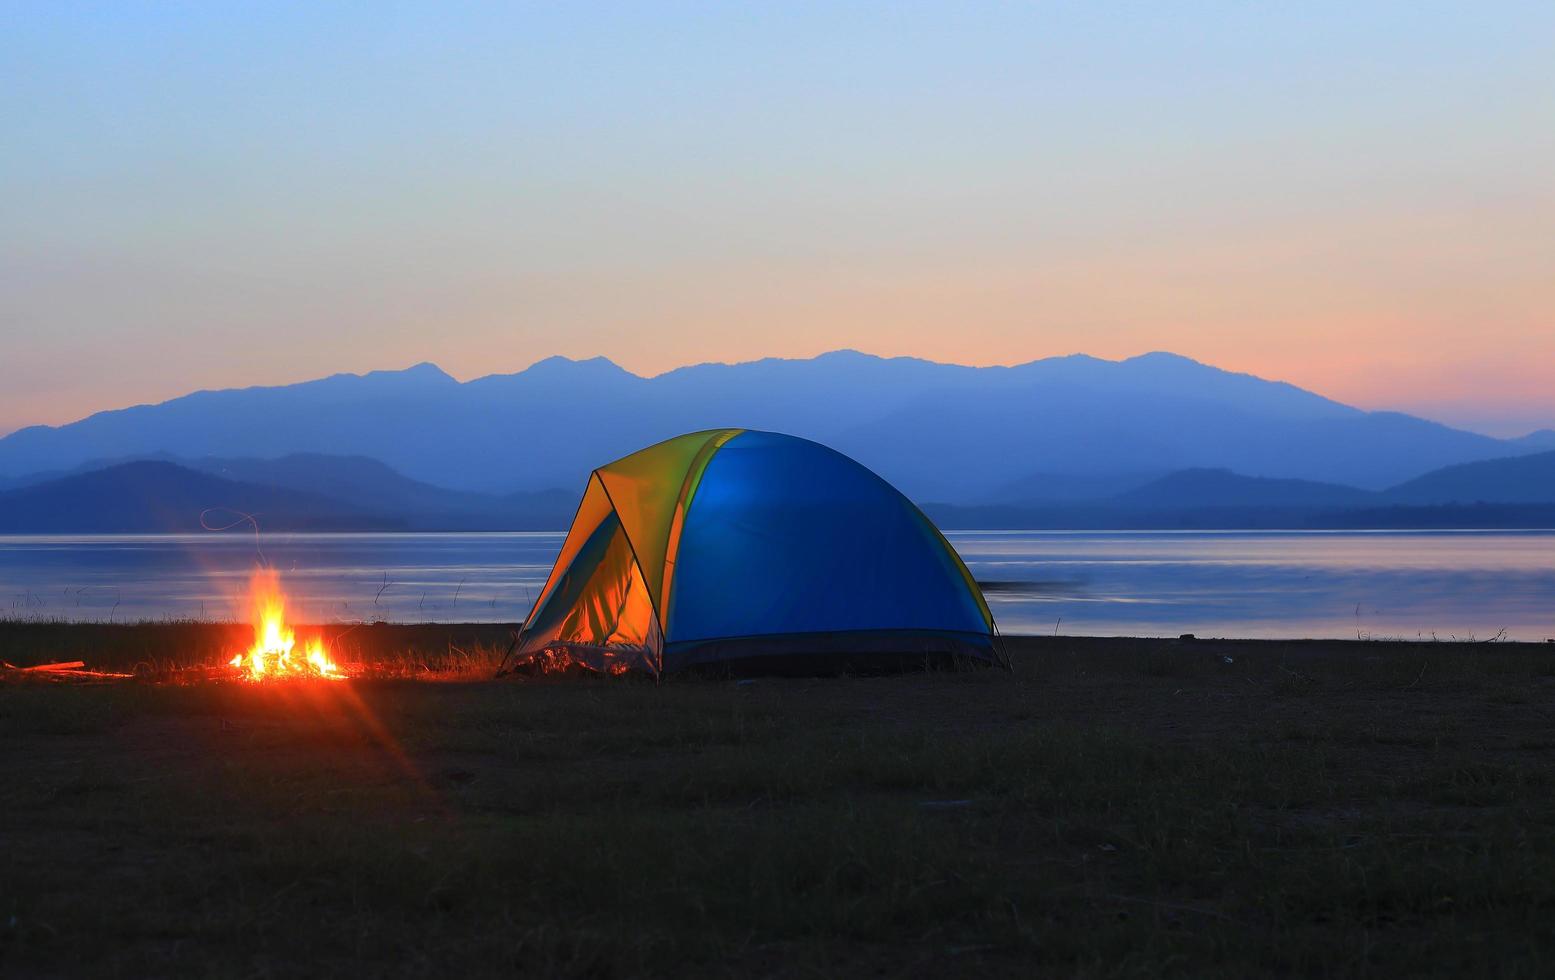 tent en kampvuur bij zonsondergang, naast het meer foto